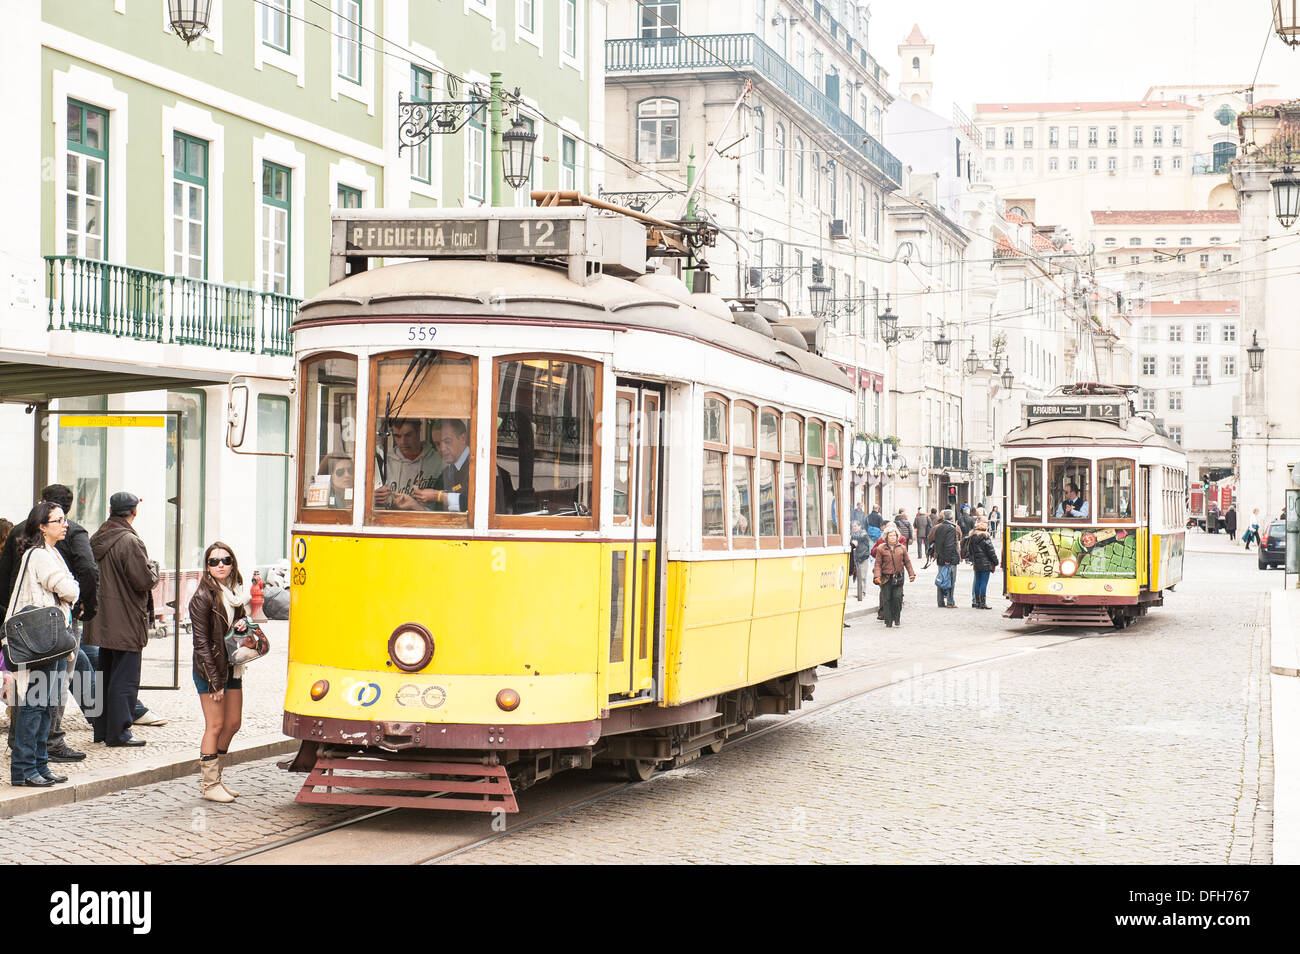 Les trams jaunes historique dans une rue pavée en place Figueira (AKA Praça da Figueira) dans la vieille ville de Lisbonne, Portugal Banque D'Images